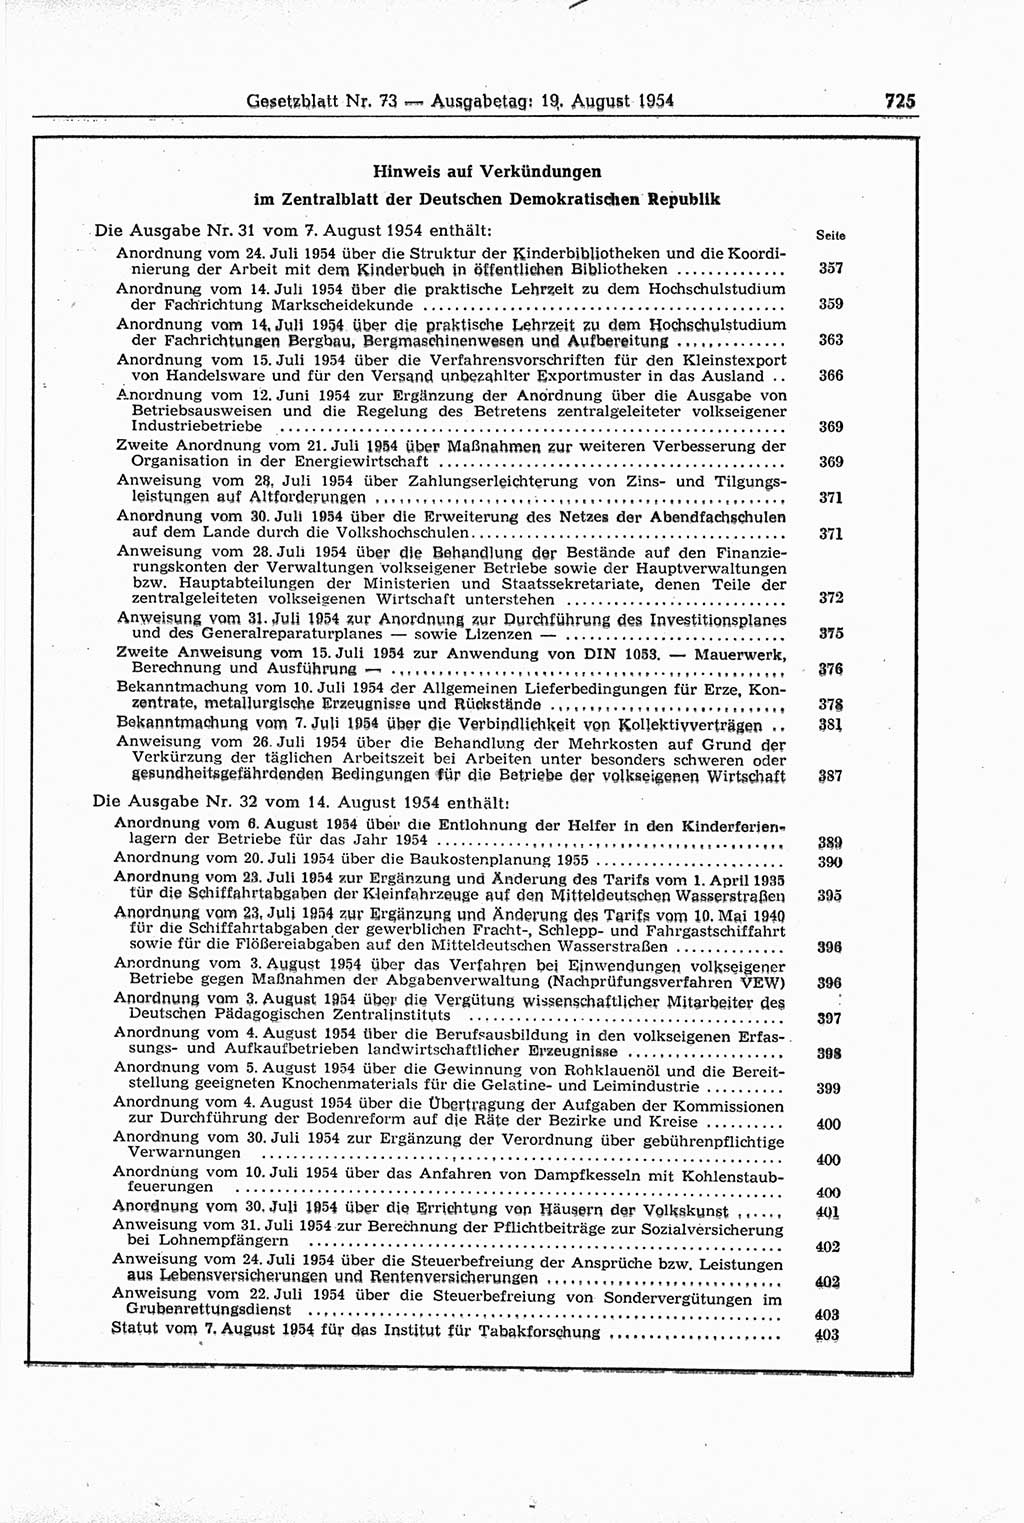 Gesetzblatt (GBl.) der Deutschen Demokratischen Republik (DDR) 1954, Seite 725 (GBl. DDR 1954, S. 725)